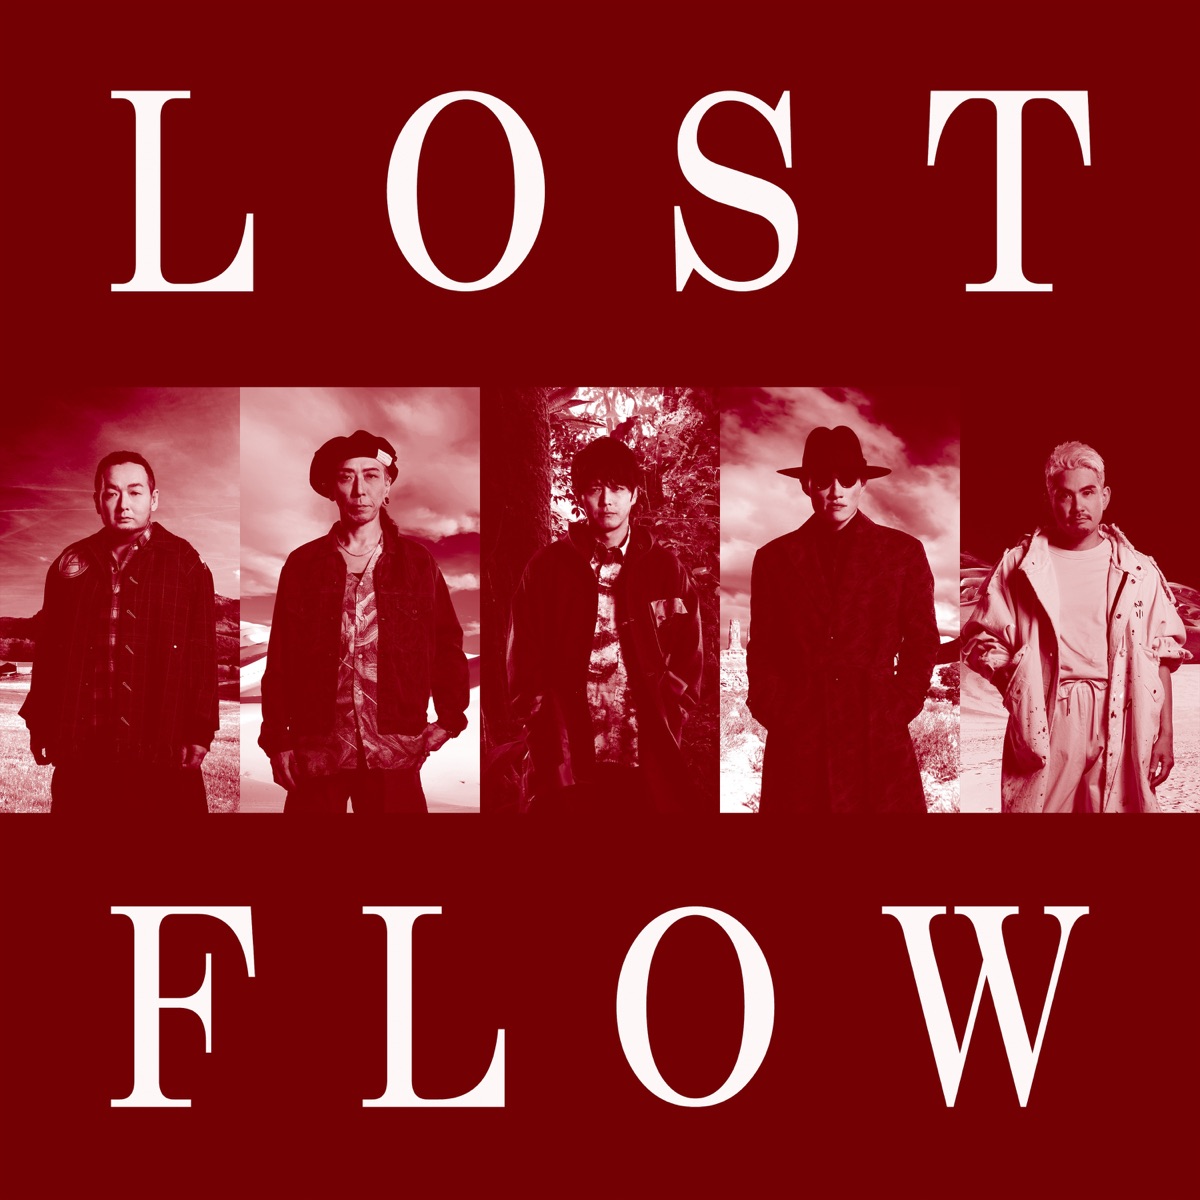 『FLOW - LOST』収録の『LOST』ジャケット